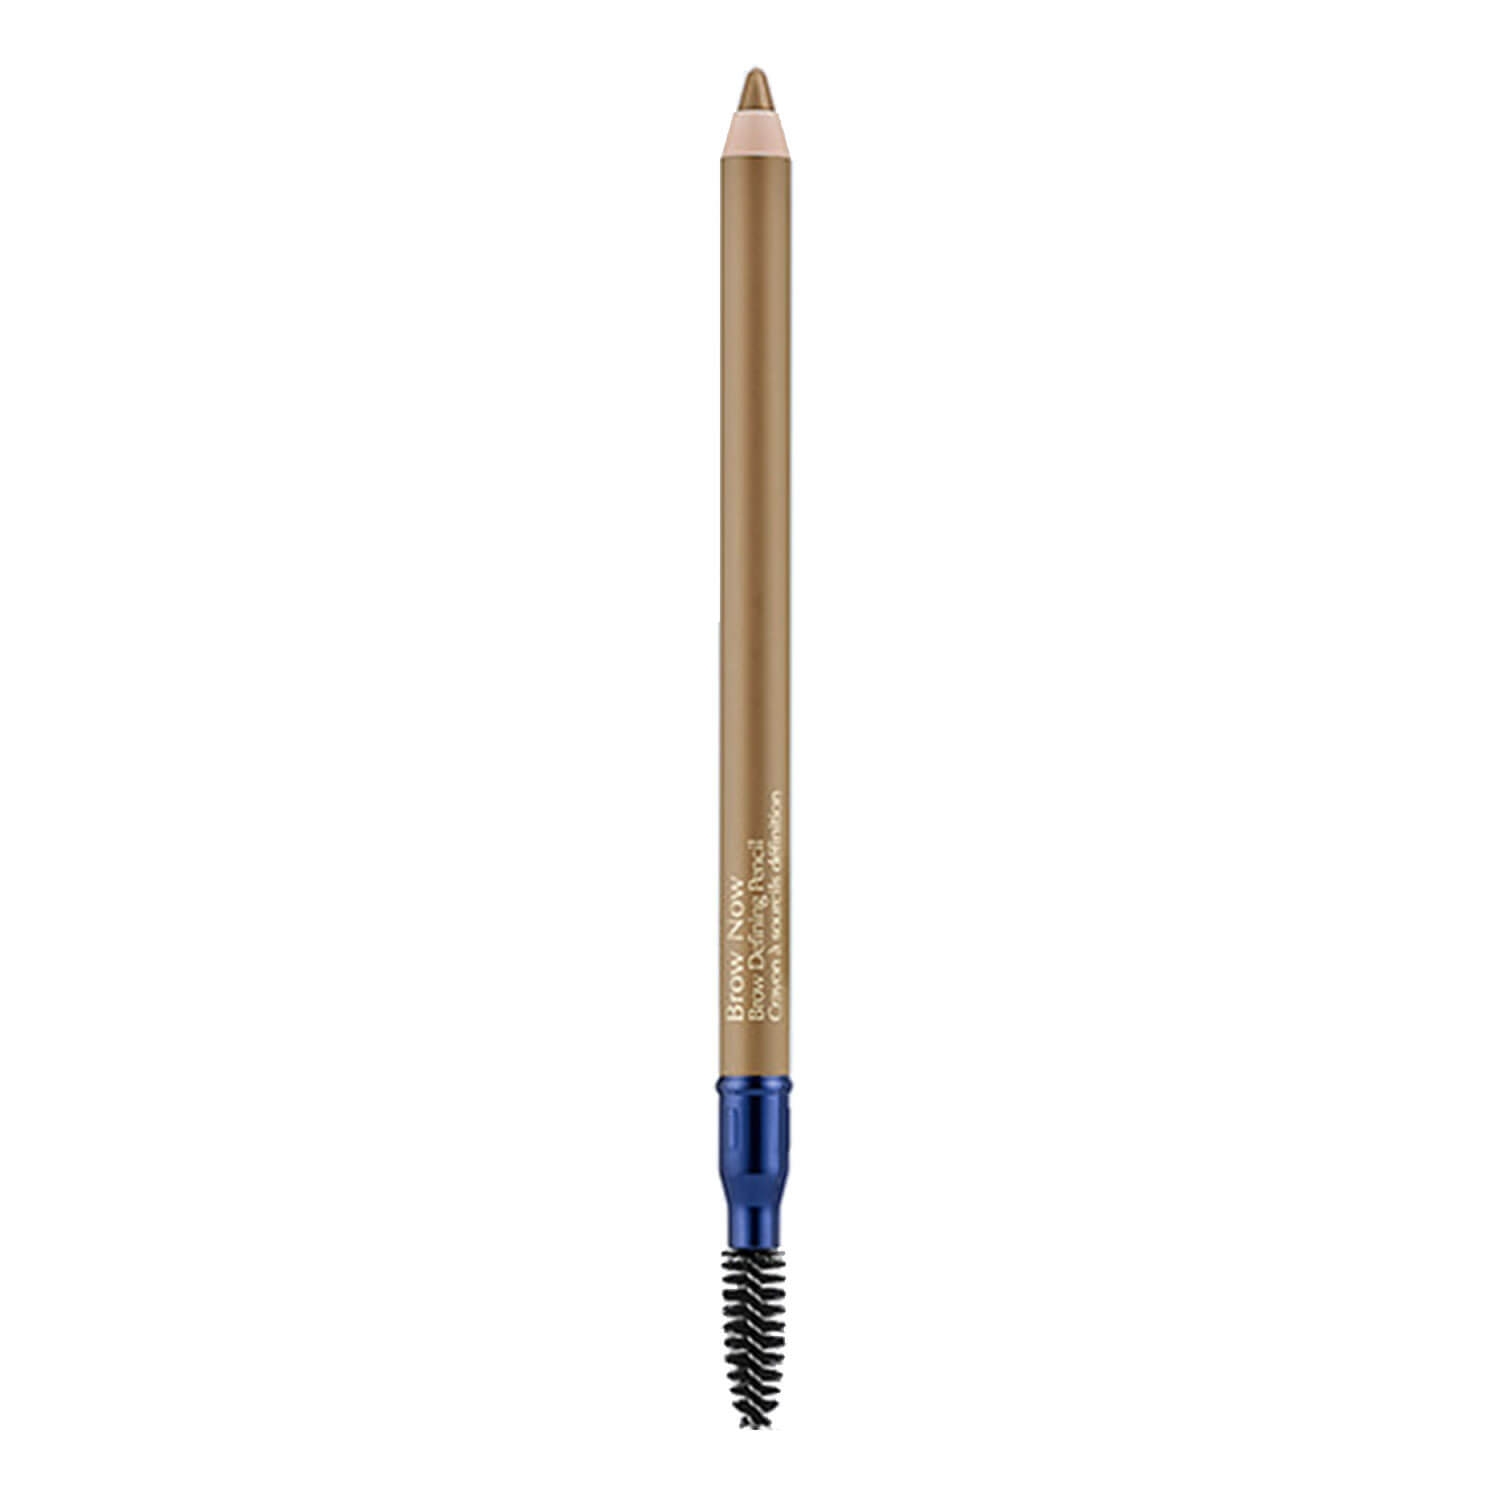 Produktbild von Brow Now - Brow Defining Pencil 01 Blonde